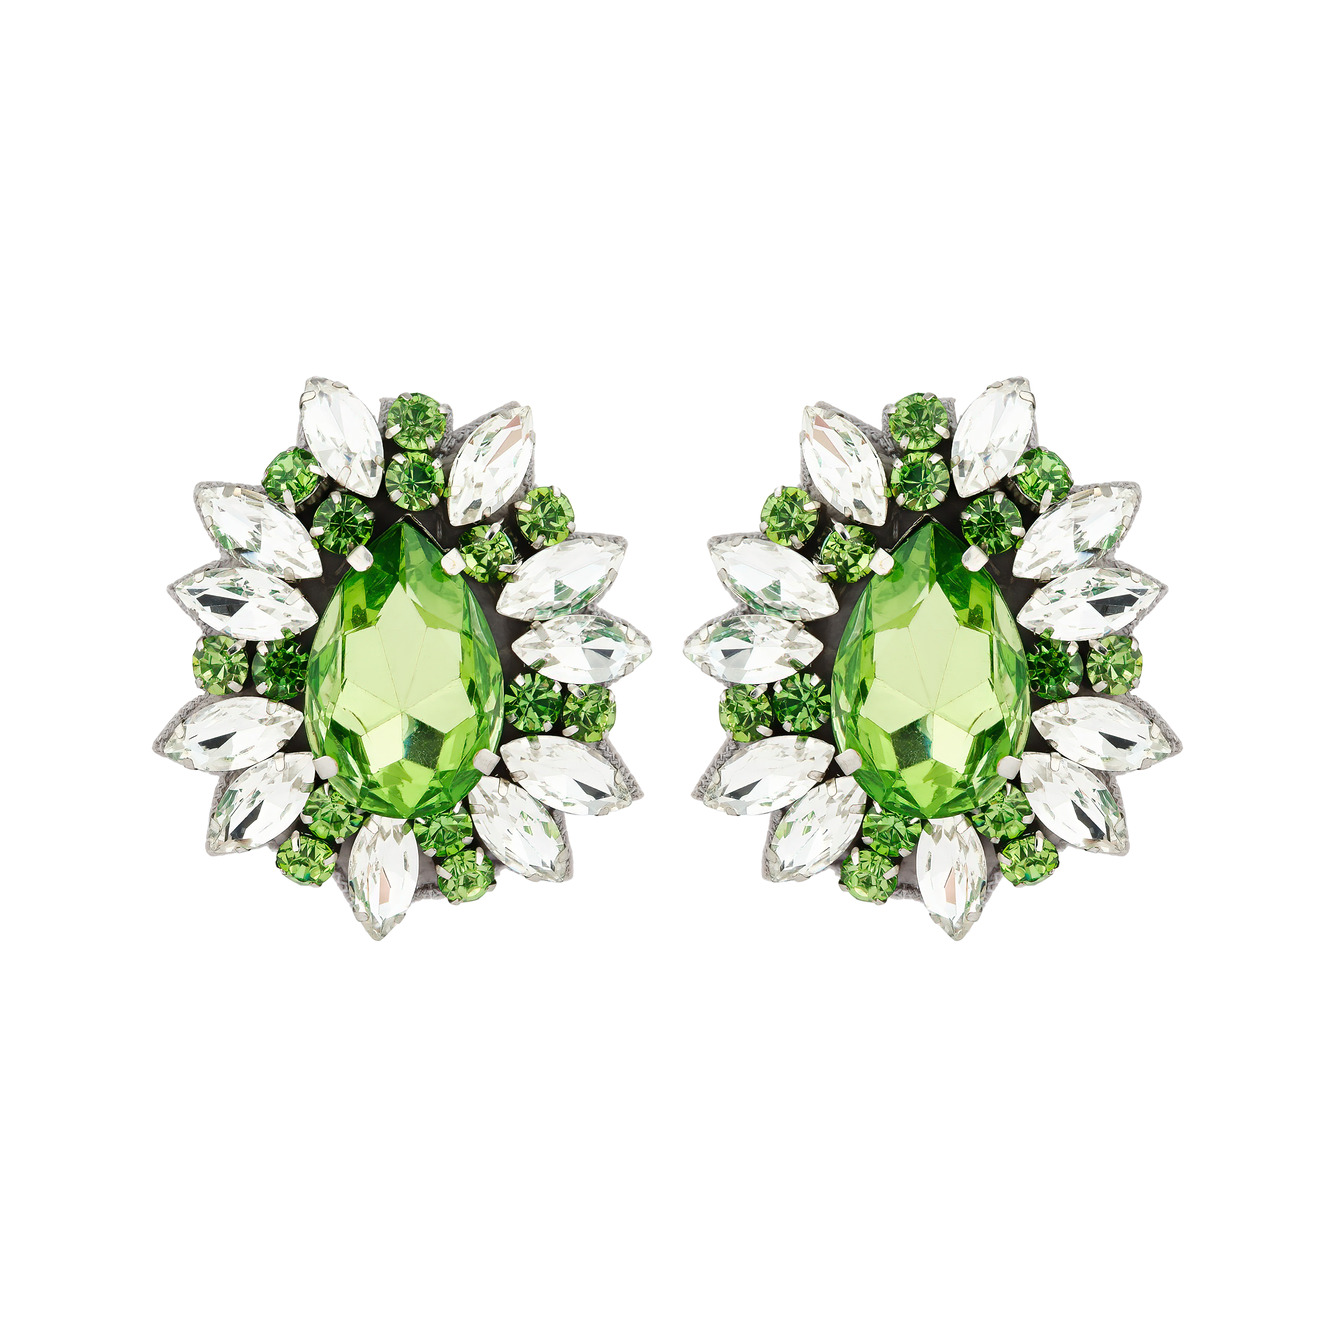 Moschino Овальные клипсы в виде цветов с зелеными кристаллами